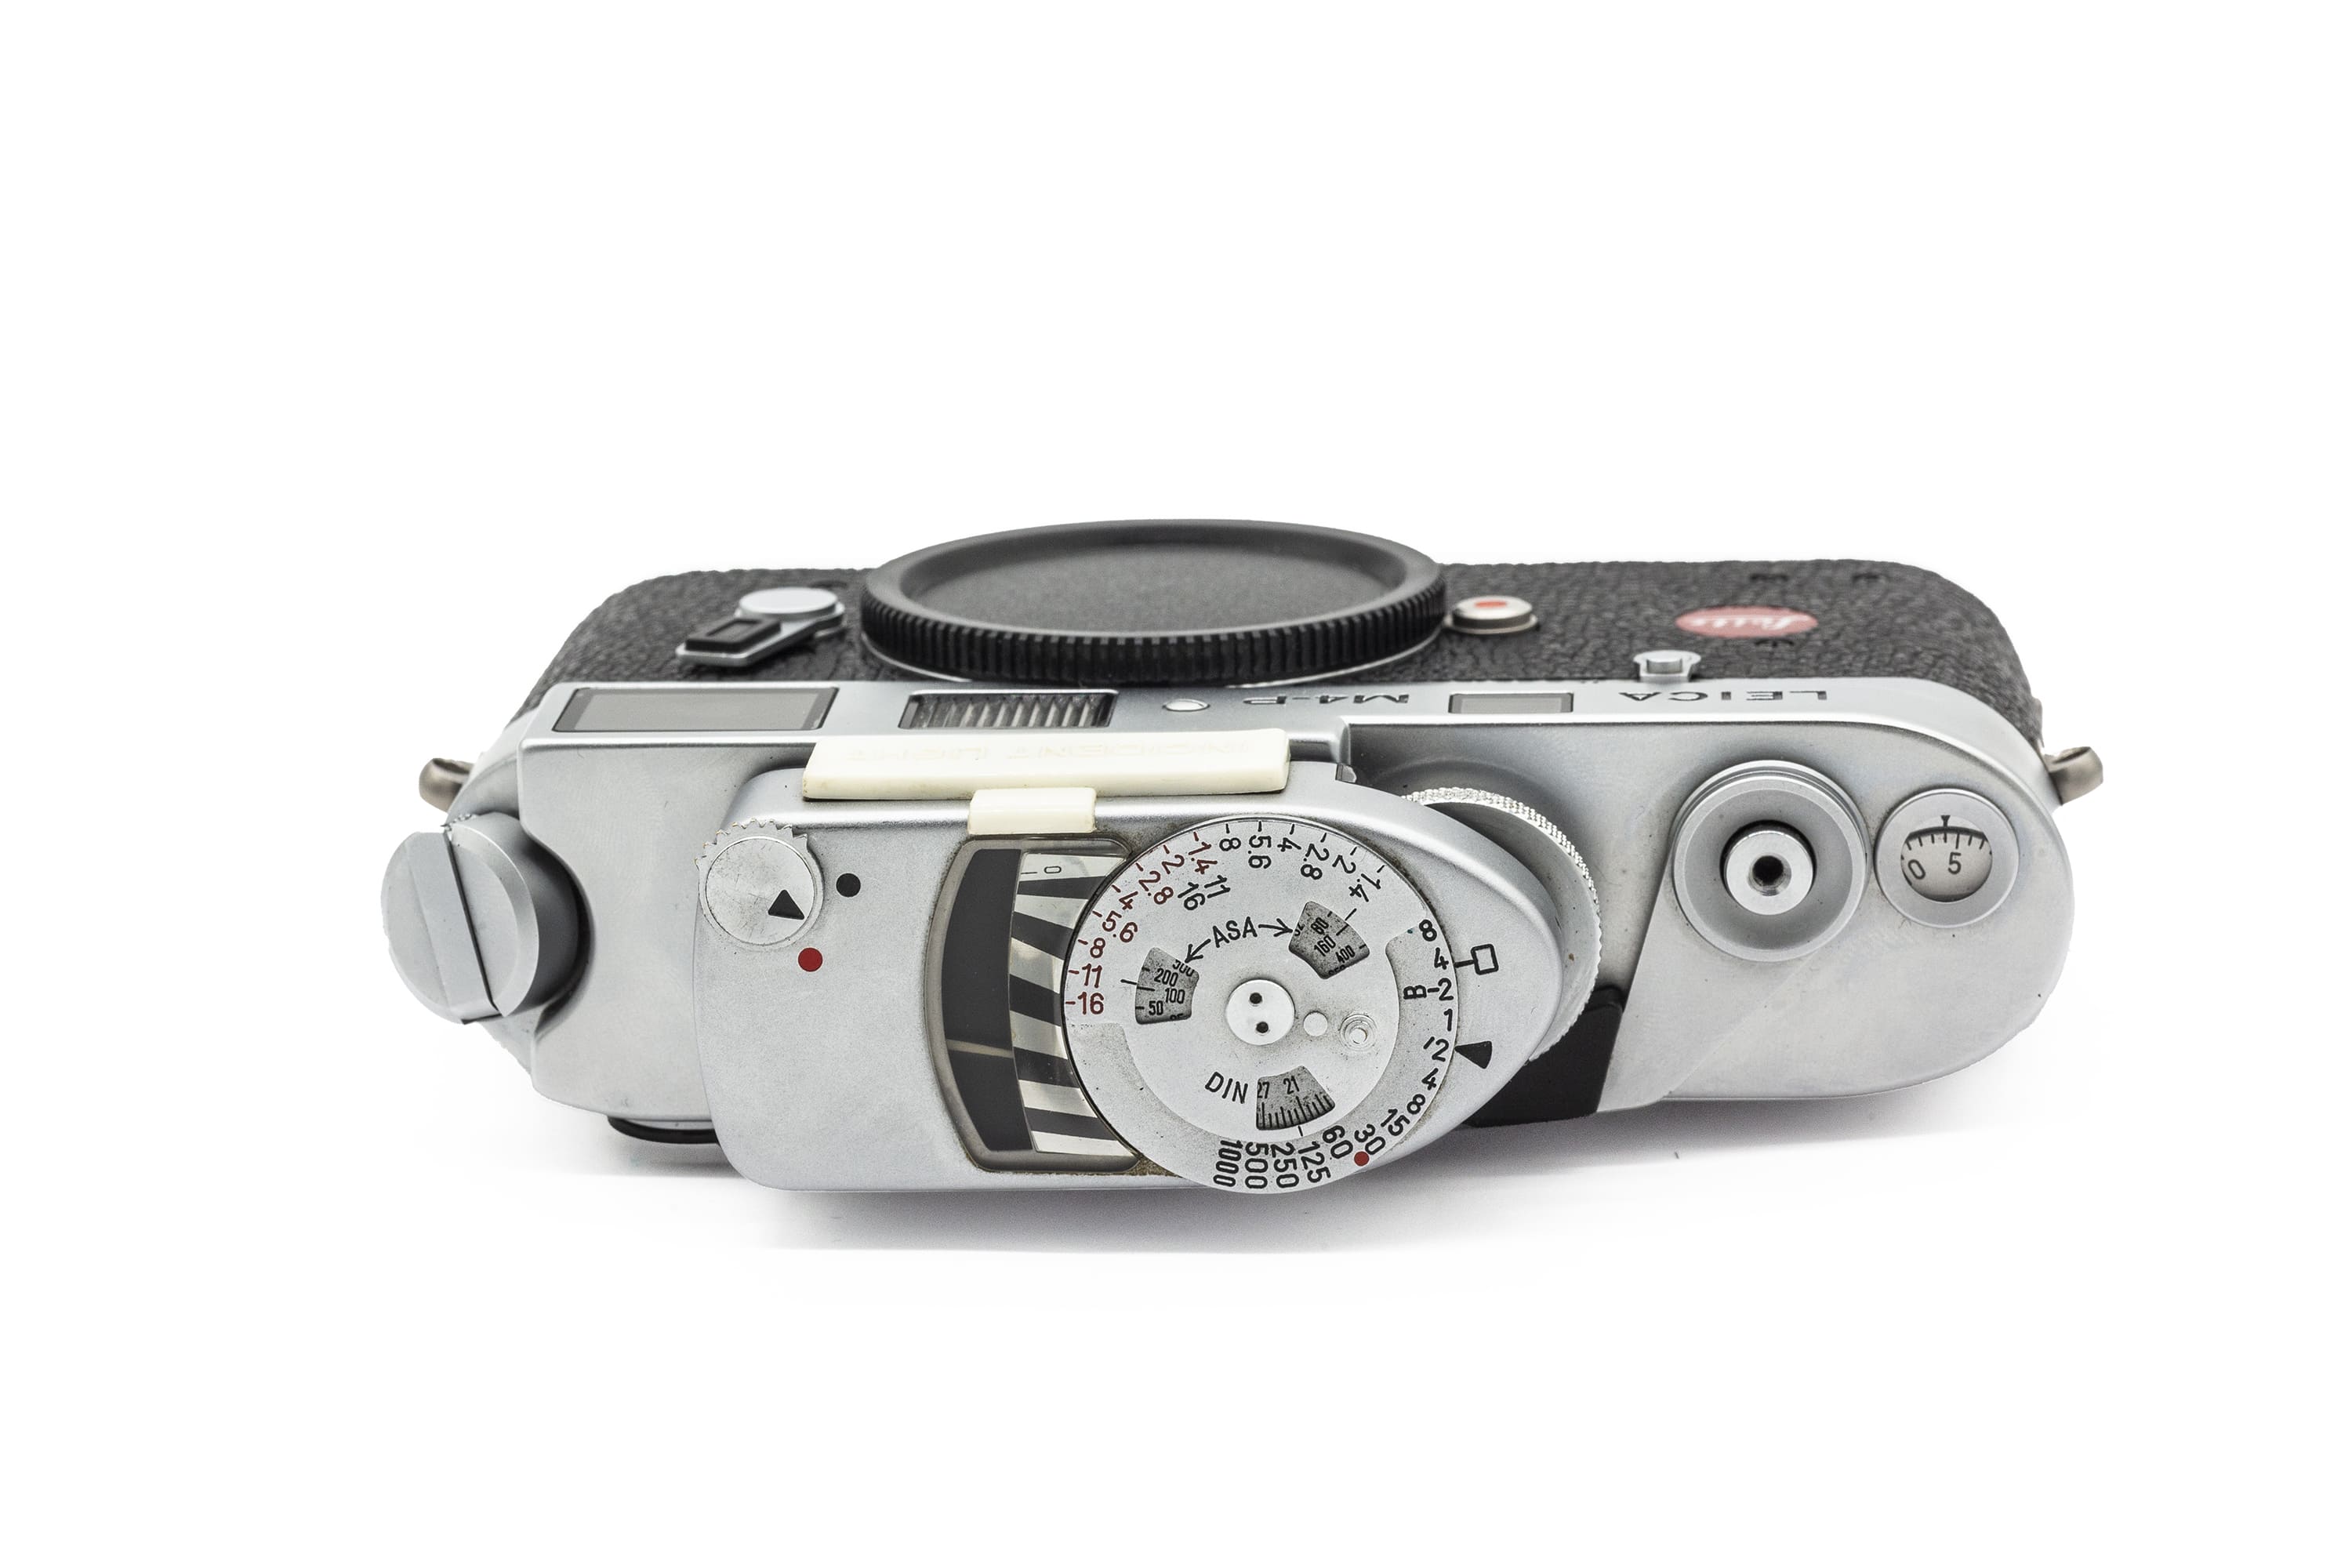 Leica M4-P Chrome + Photometer